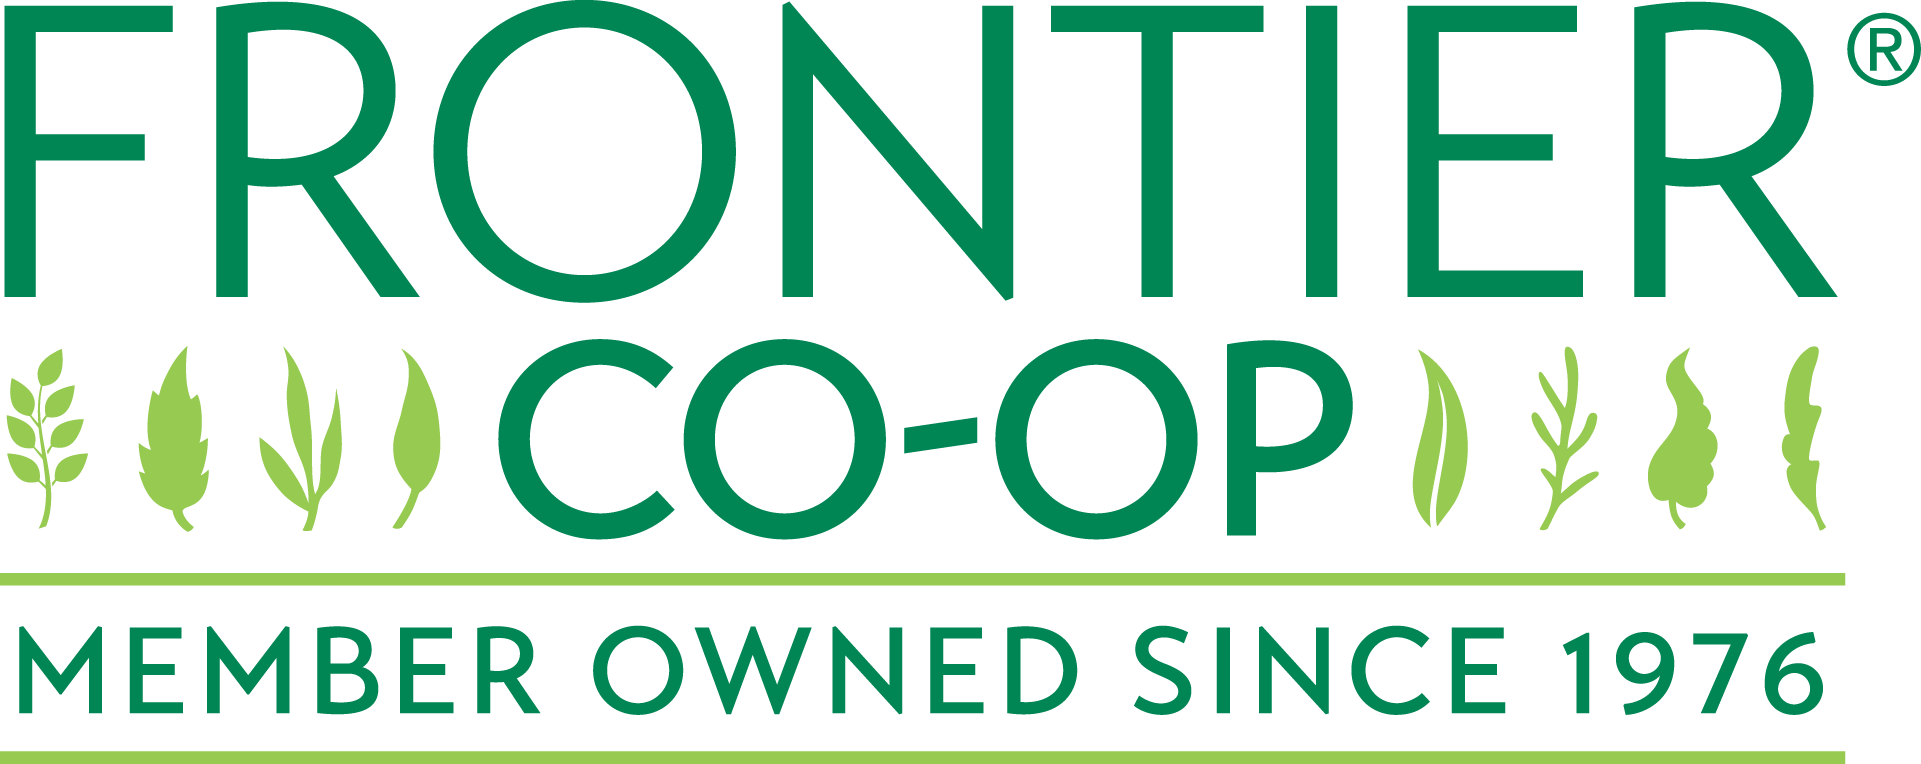 Frontier Coop Logo